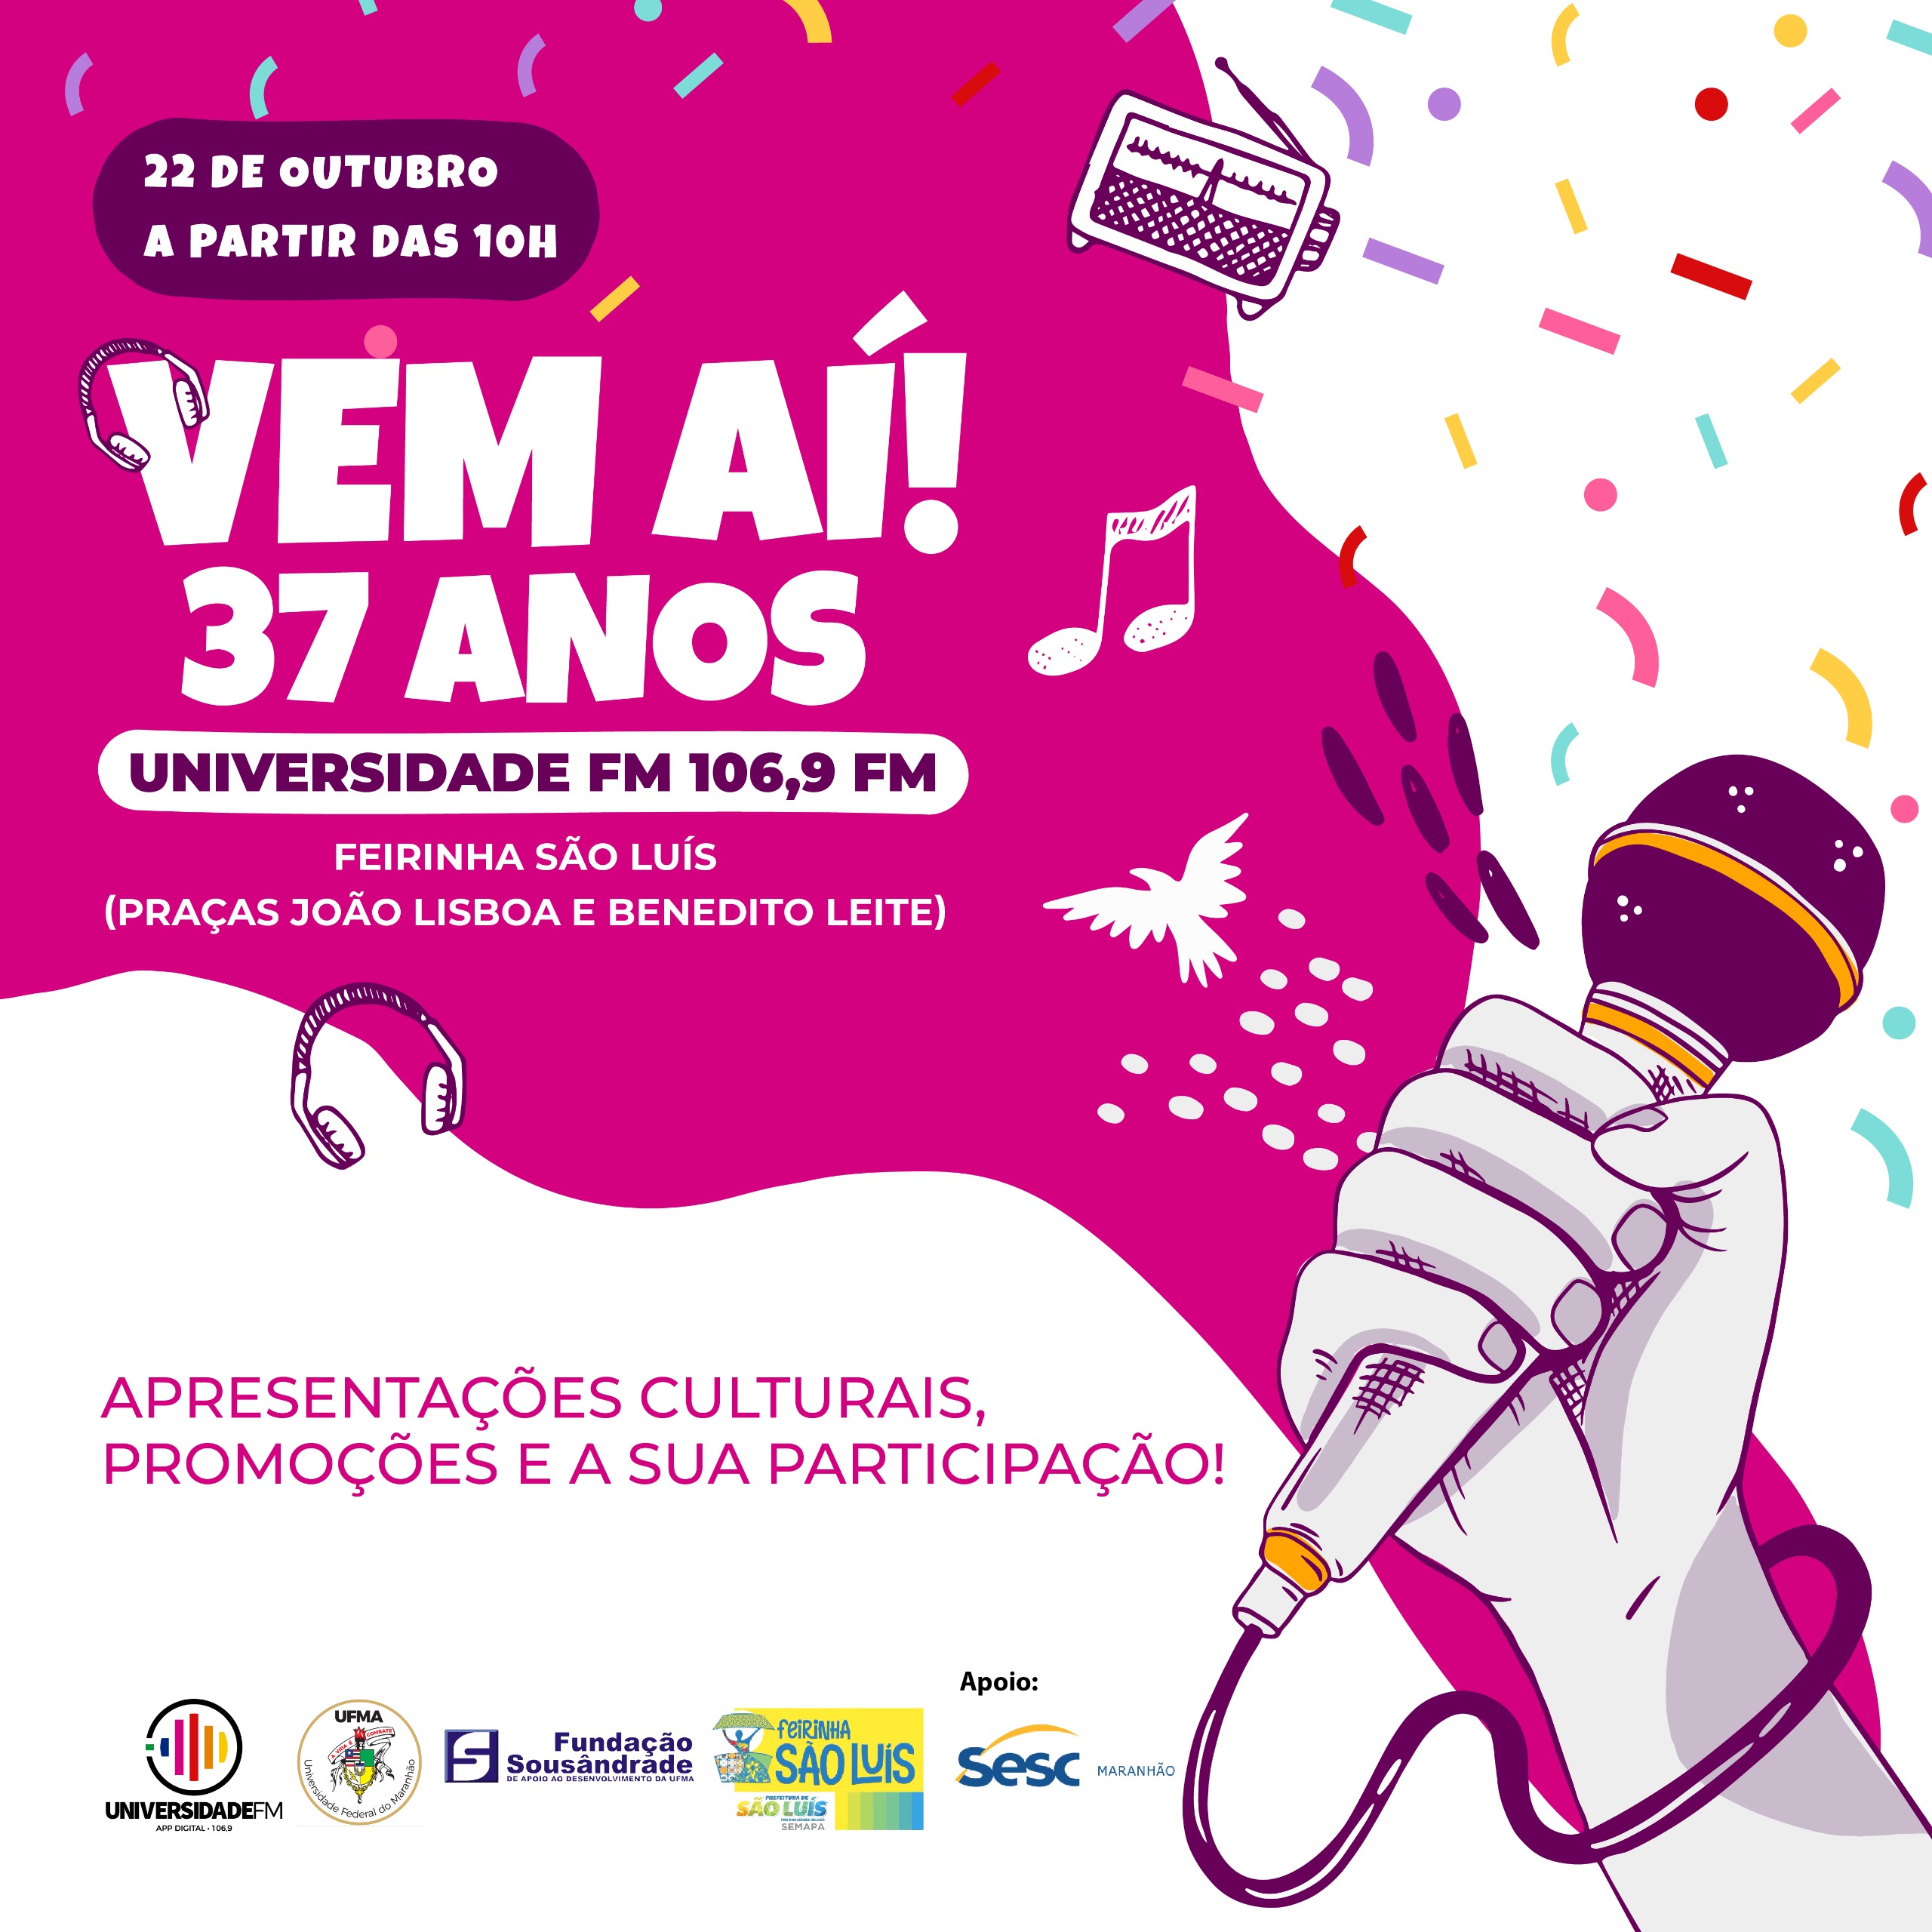 Universidade FM celebrará 37 anos com programação cultural na Feirinha São Luís